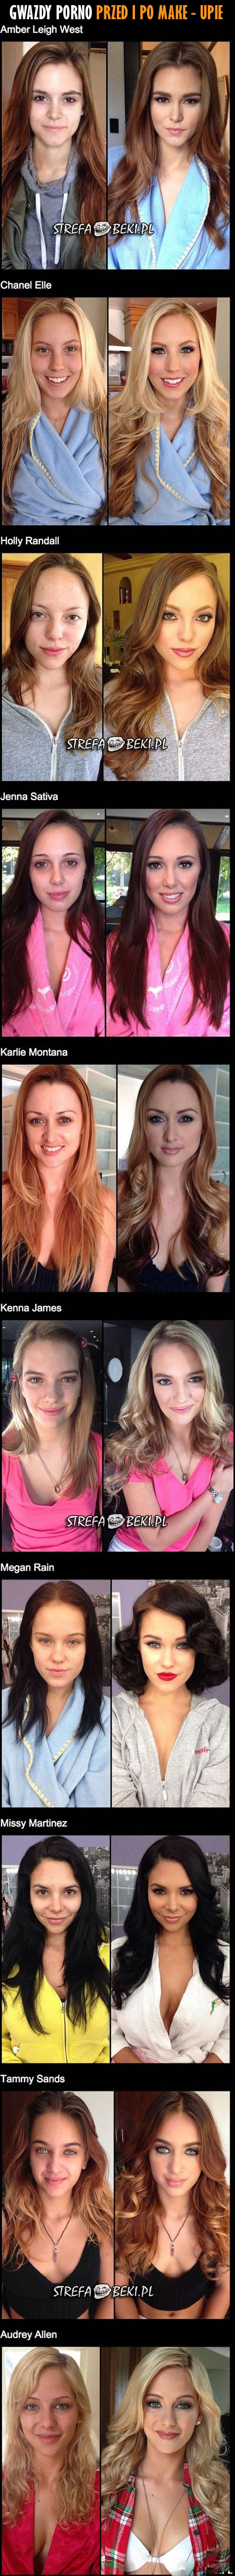 Gwiazdy porno przed i po make - upie.